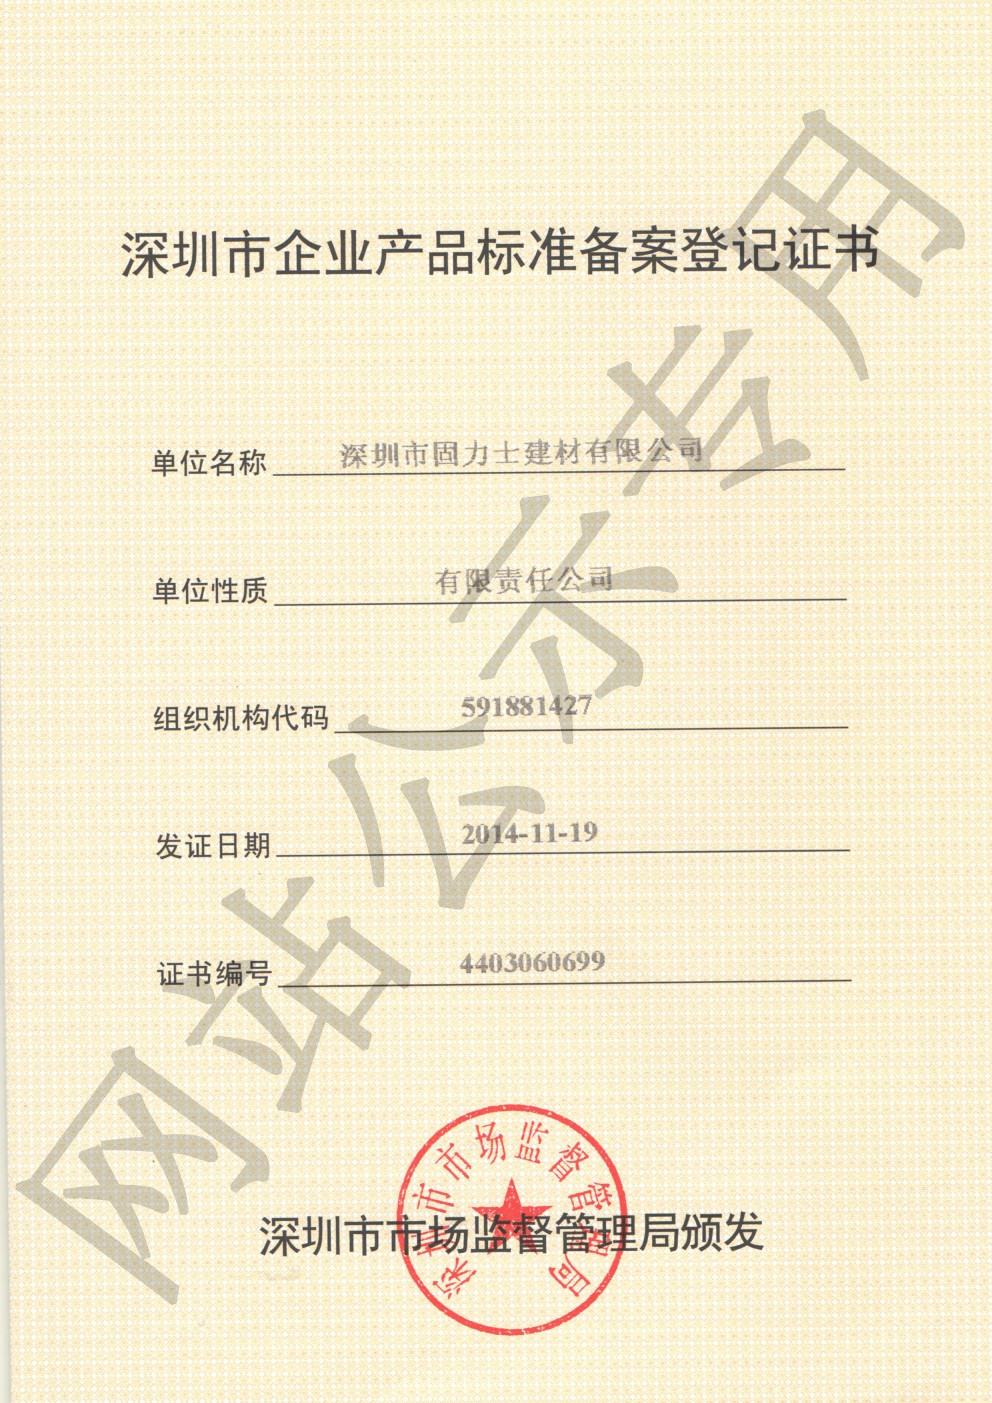 兴隆华侨农场企业产品标准登记证书